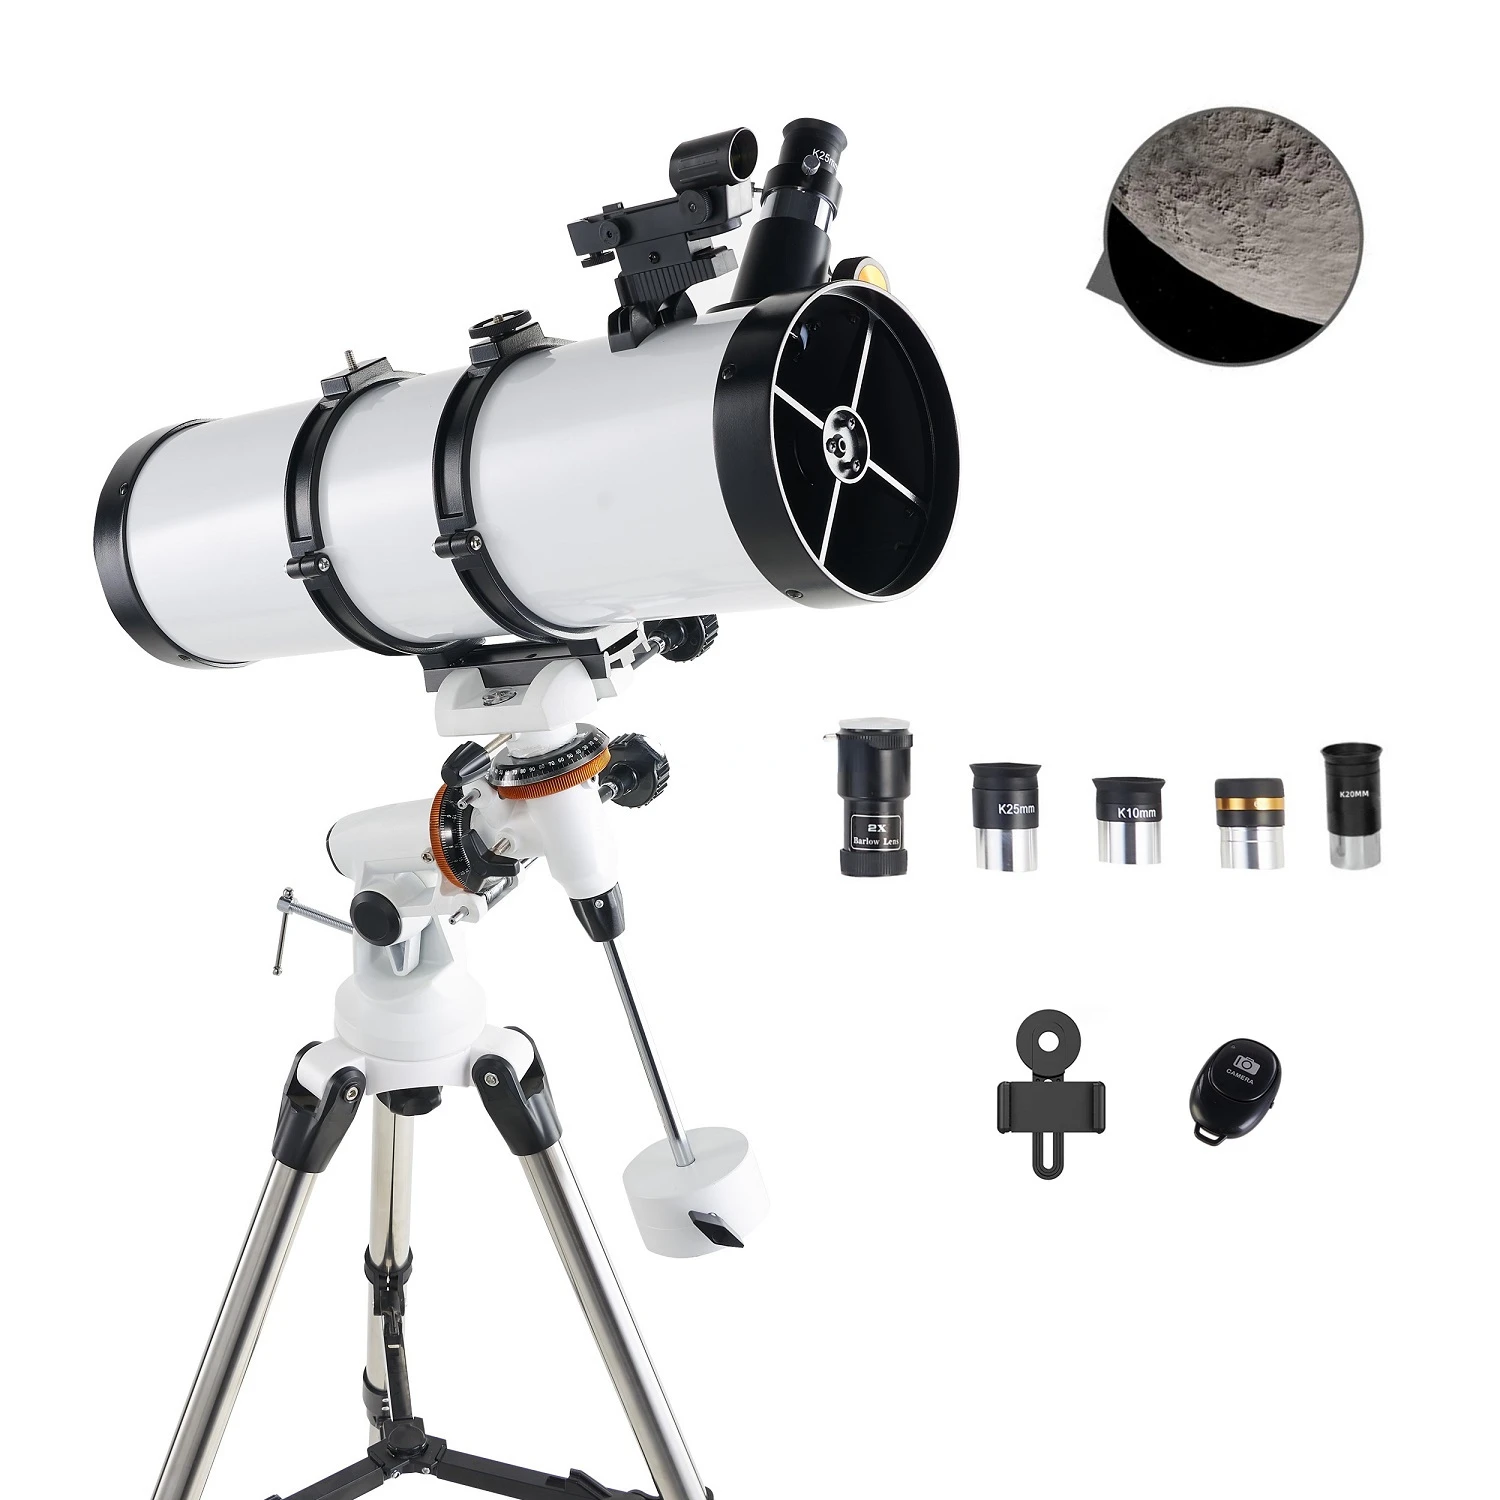 

Телескоп 130EQ, телескопы с отражателем для взрослых, профессиональный телескоп 130650 с креплением EQ для астрономии